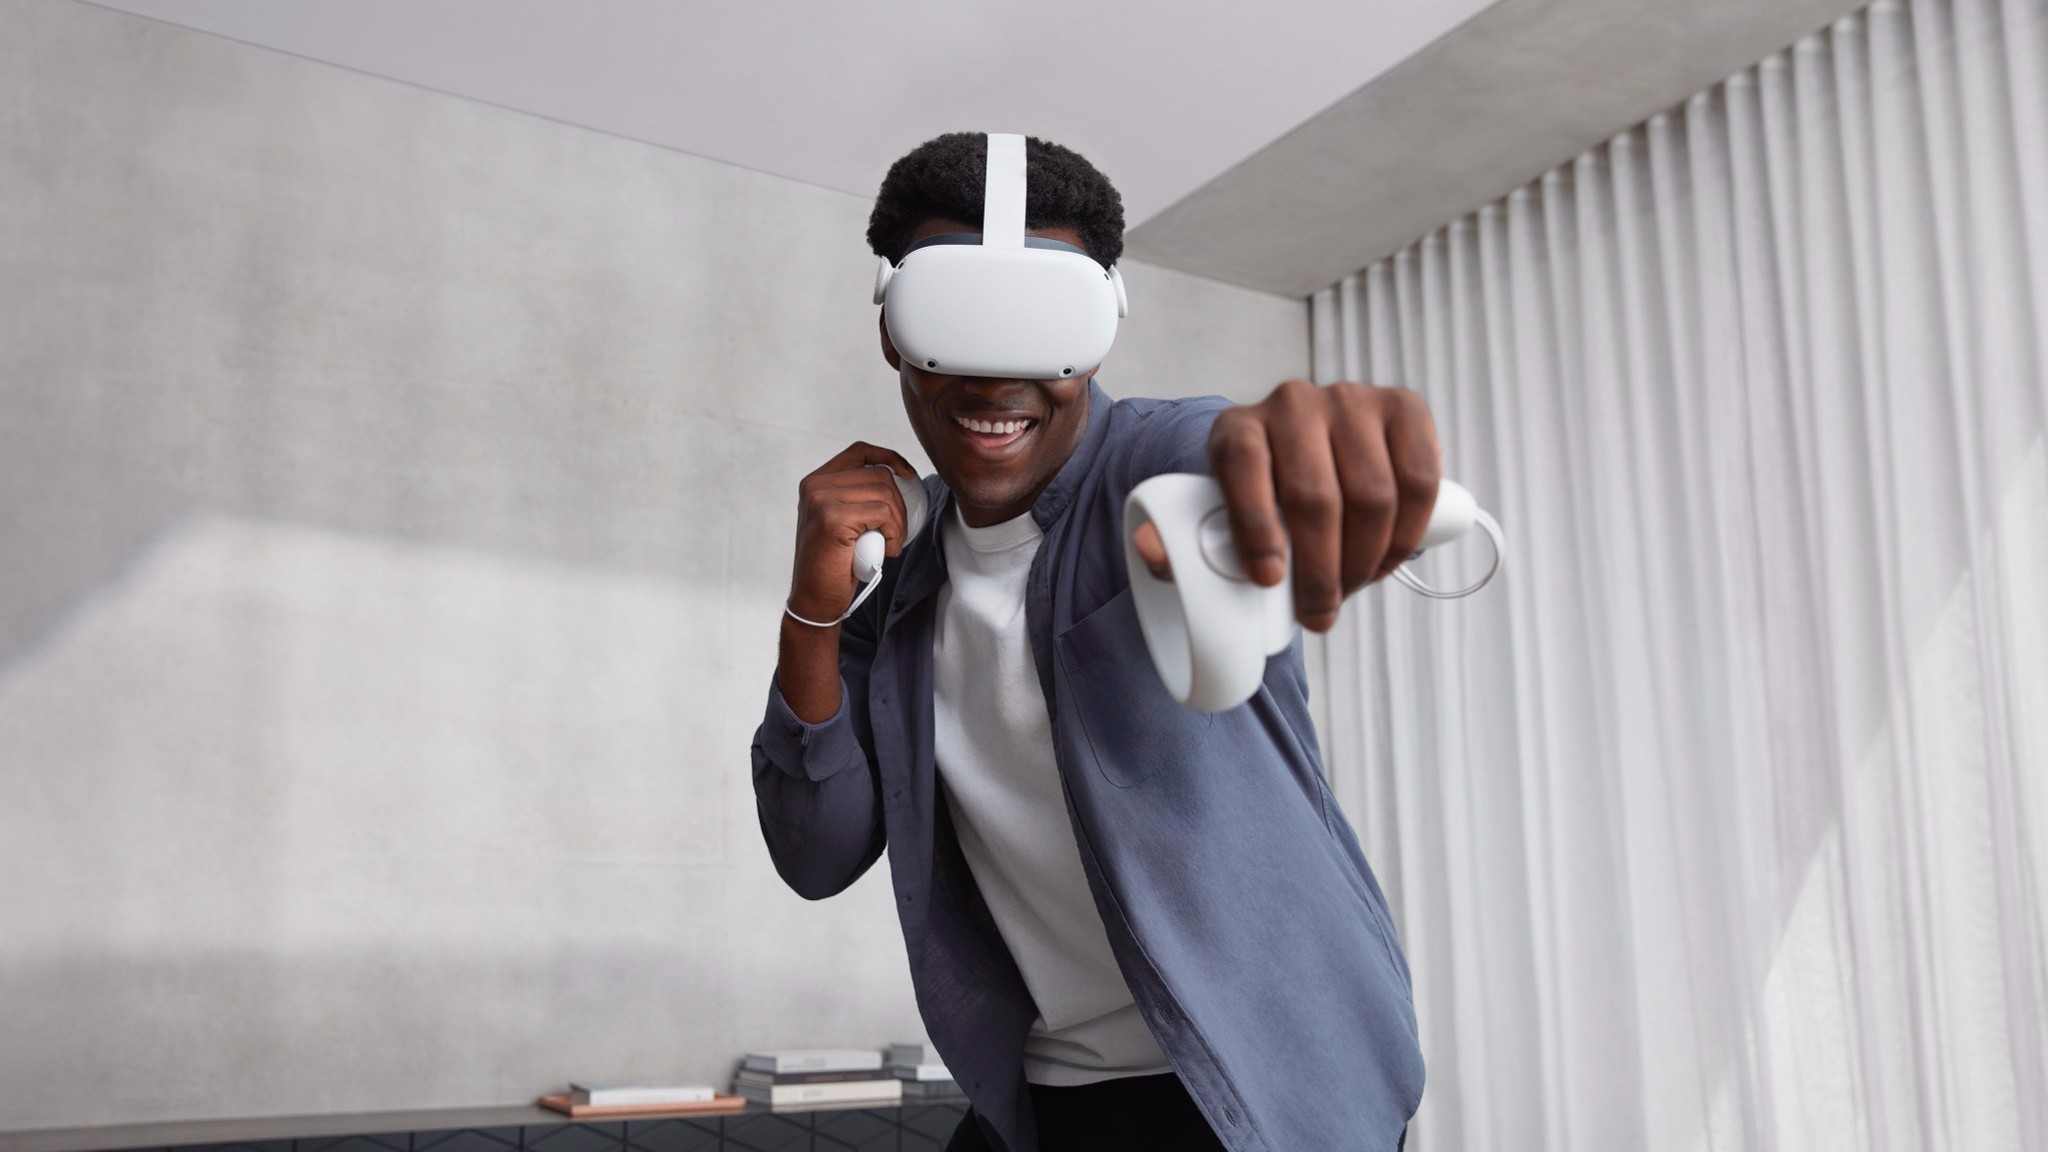 Hướng dẫn set up kính VR Oculus Quest 2 cho người mới